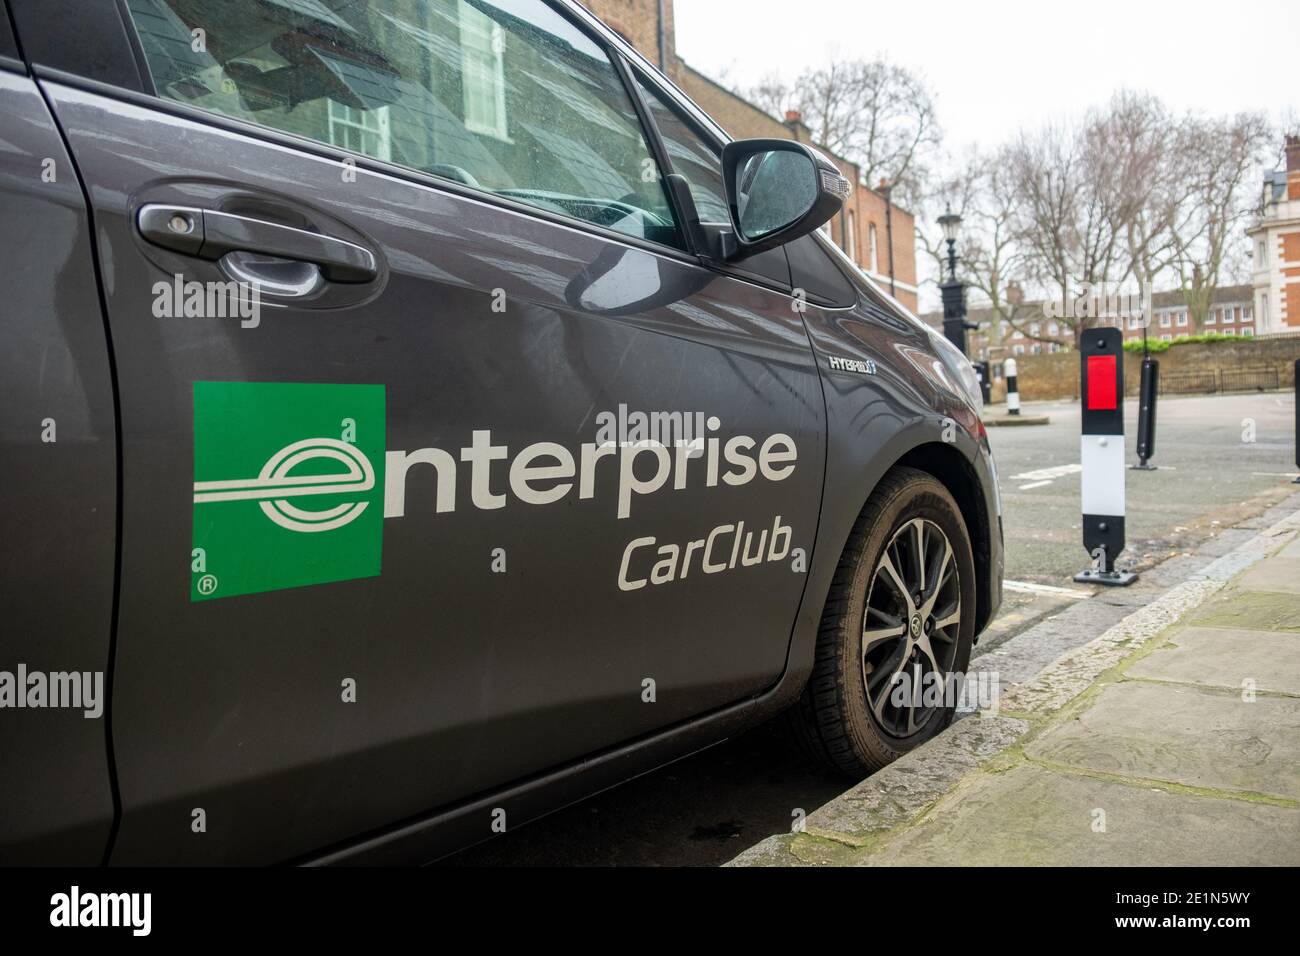 London - Enterprise Car Club Auto geparkt in London Street. Stündliche Autovermietung Stockfoto